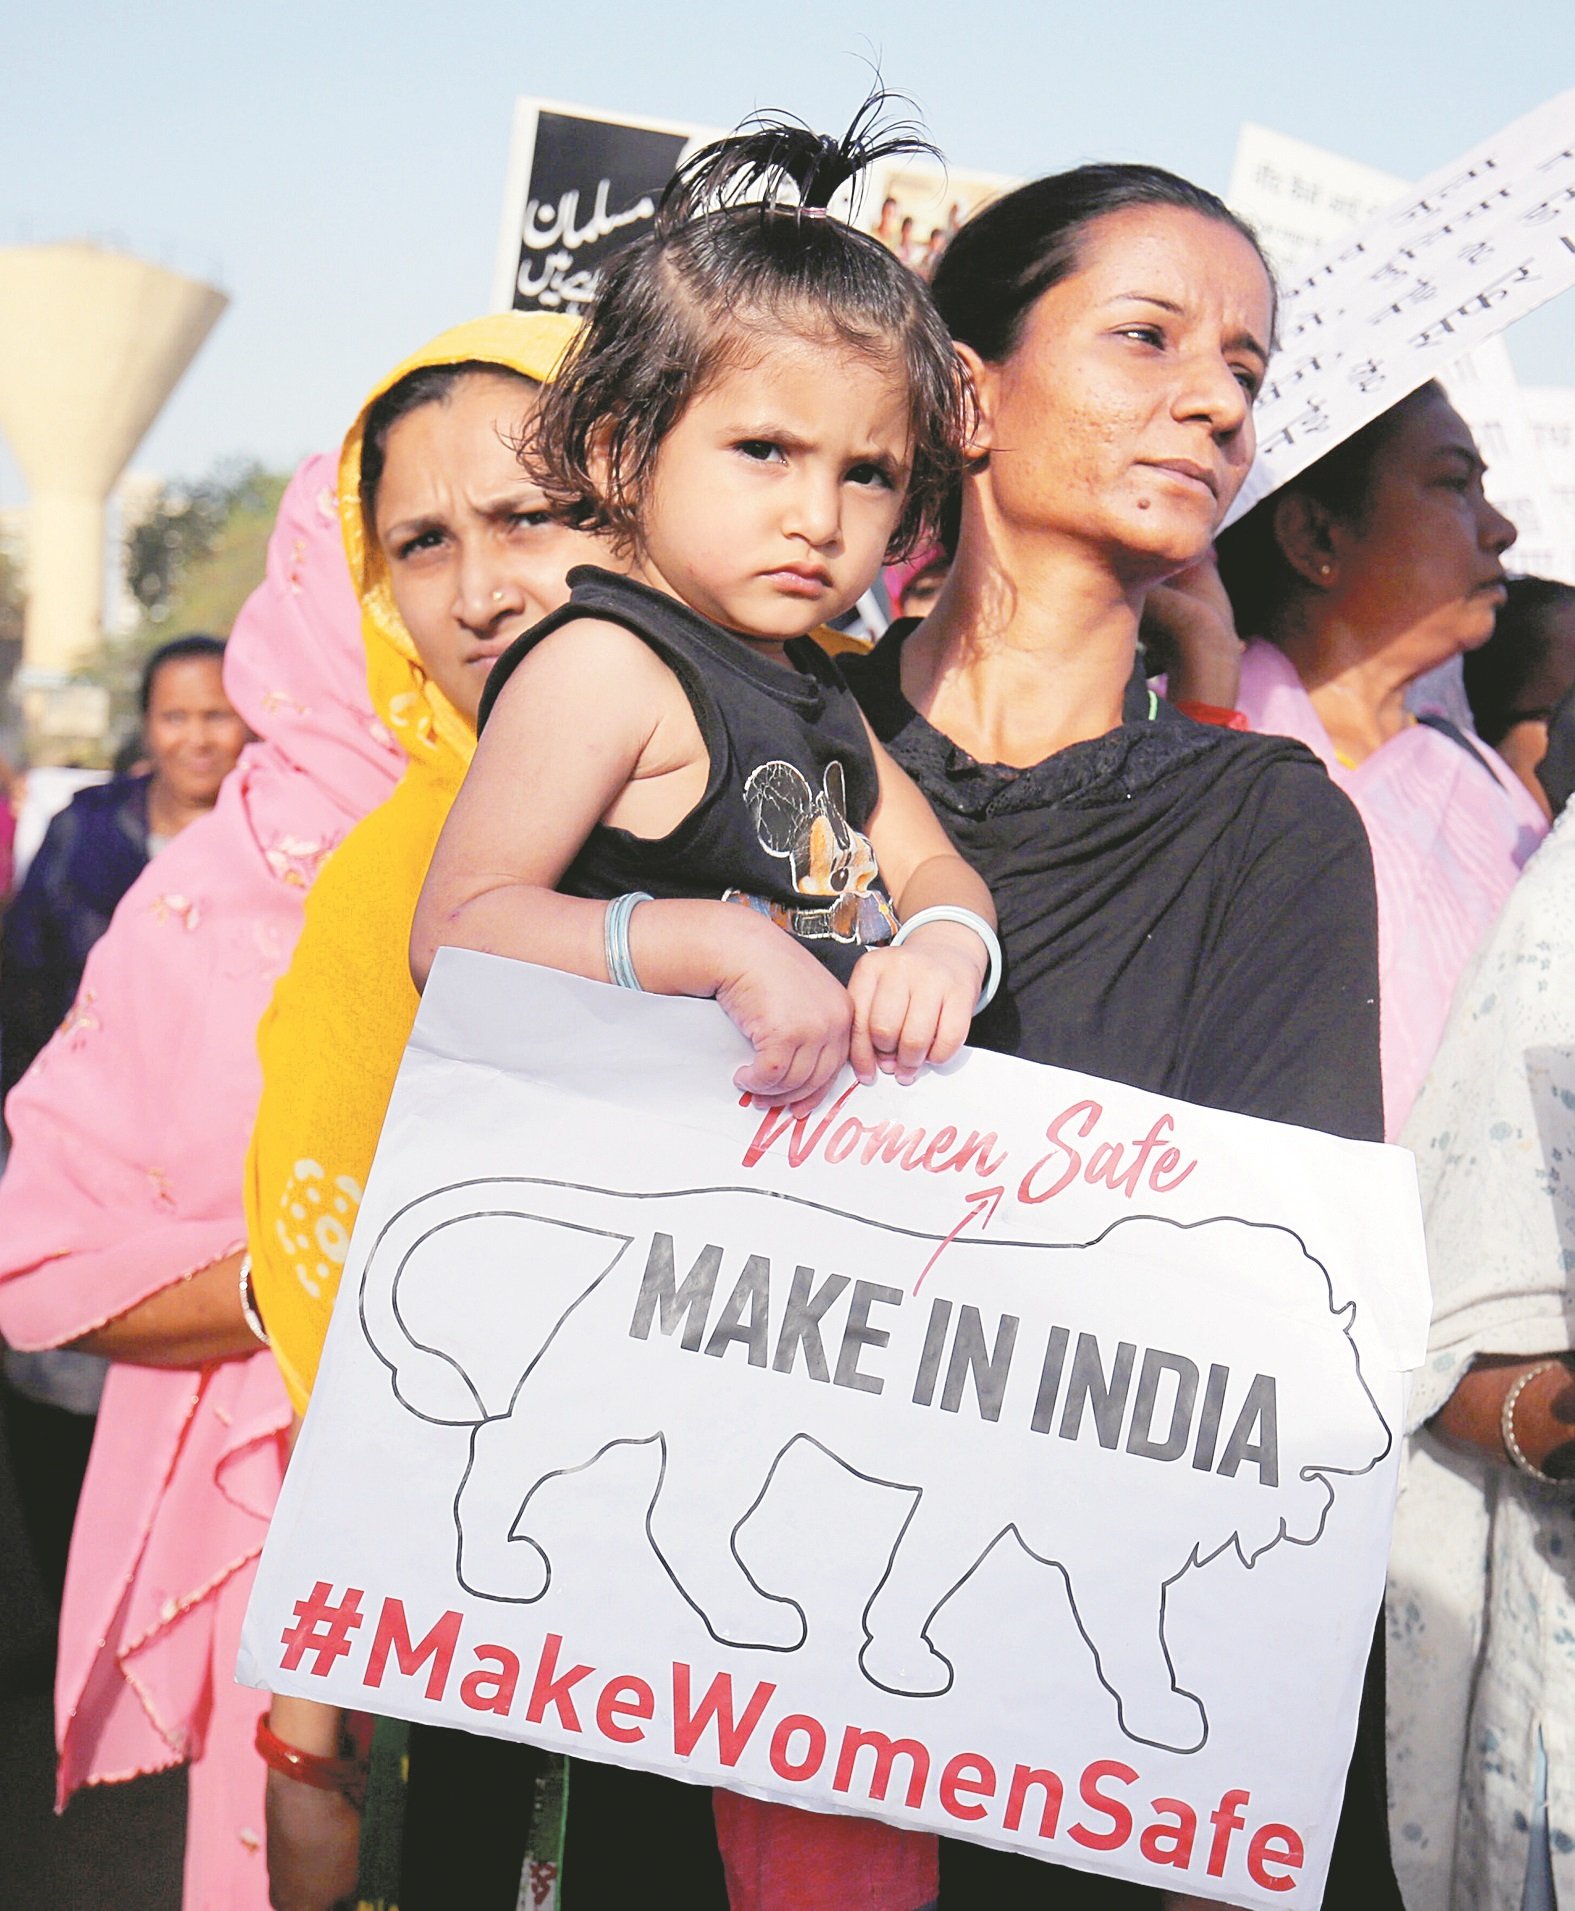 印度女性遭奸杀骇人听闻。今年1月，一名8岁女孩在北部查谟和克什米尔地区遭绑架，被喂食安眠药后连续5天遭8名男子轮奸和杀害；接著有一名执政党议员涉嫌在北方邦乌纳奥强奸少女案，以及古吉拉特邦苏拉特市一名11岁女孩周日被发现遭人奸杀，这一连串事件引发印度多个城市举行大规模示威，为受害者伸张正义。周三在印度艾哈迈达巴德市，一位母亲携同女儿参与当地的示威集会。